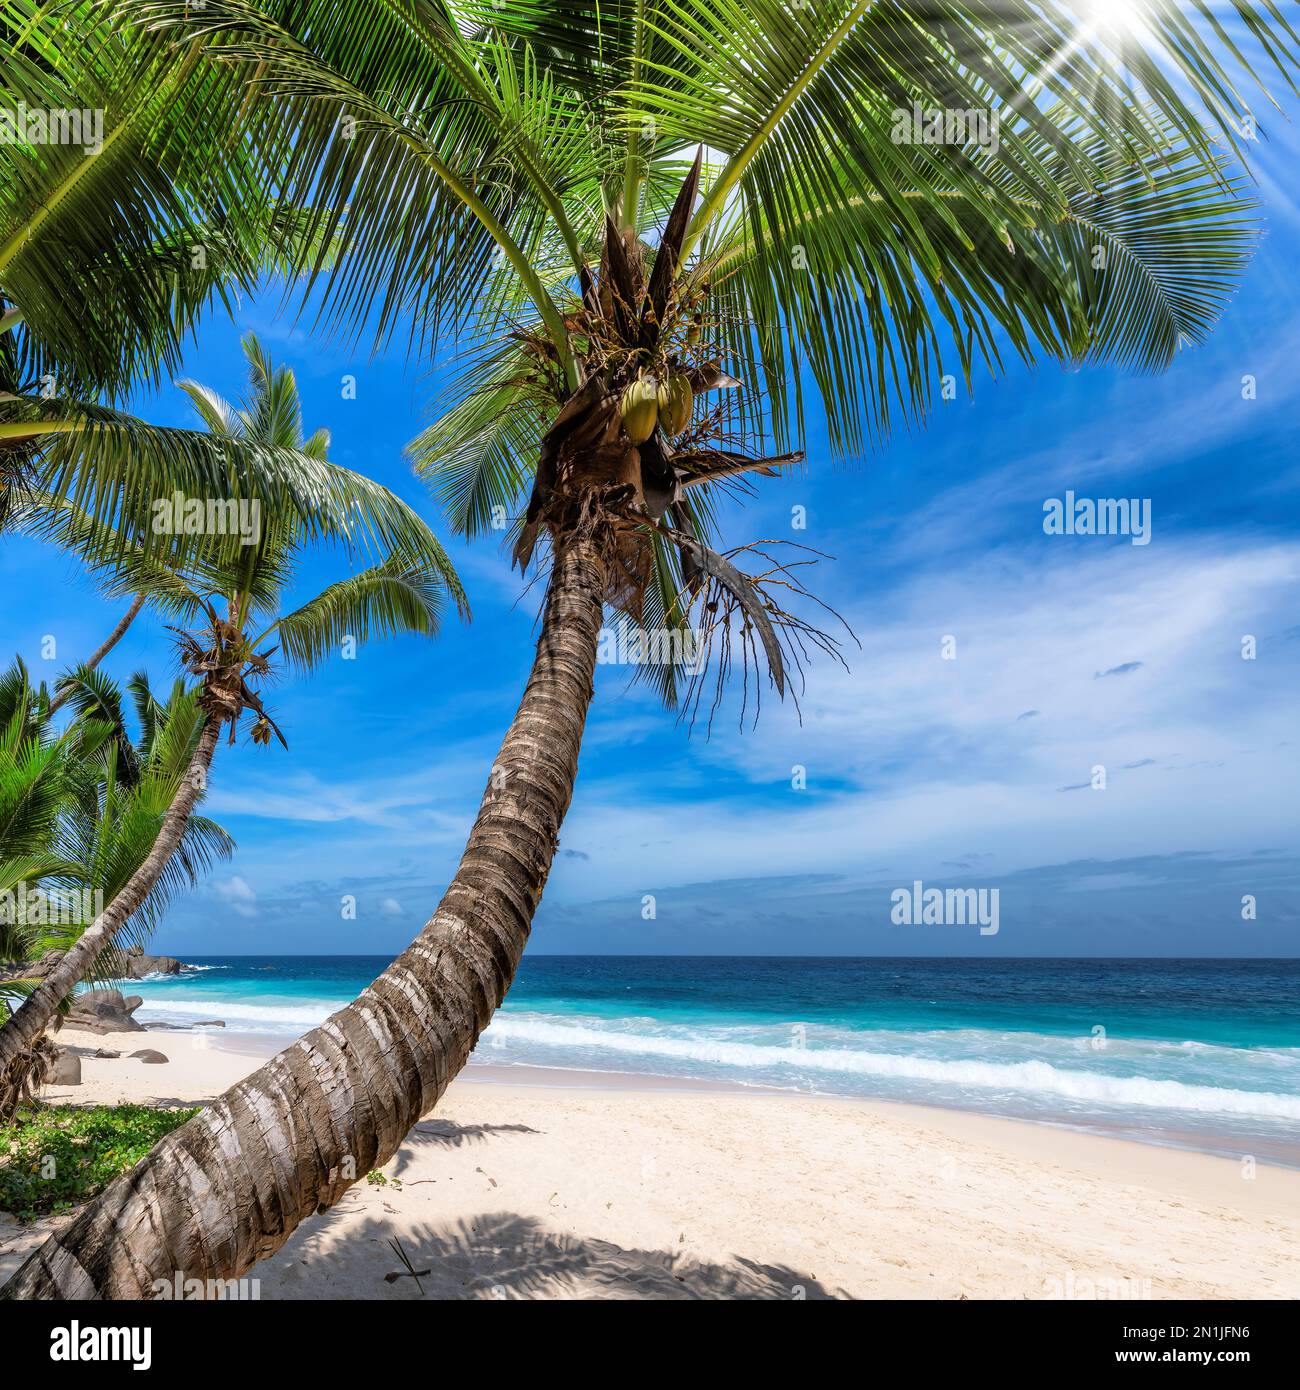 Palmiers sur une plage tropicale ensoleillée dans l'île des Caraïbes. Banque D'Images